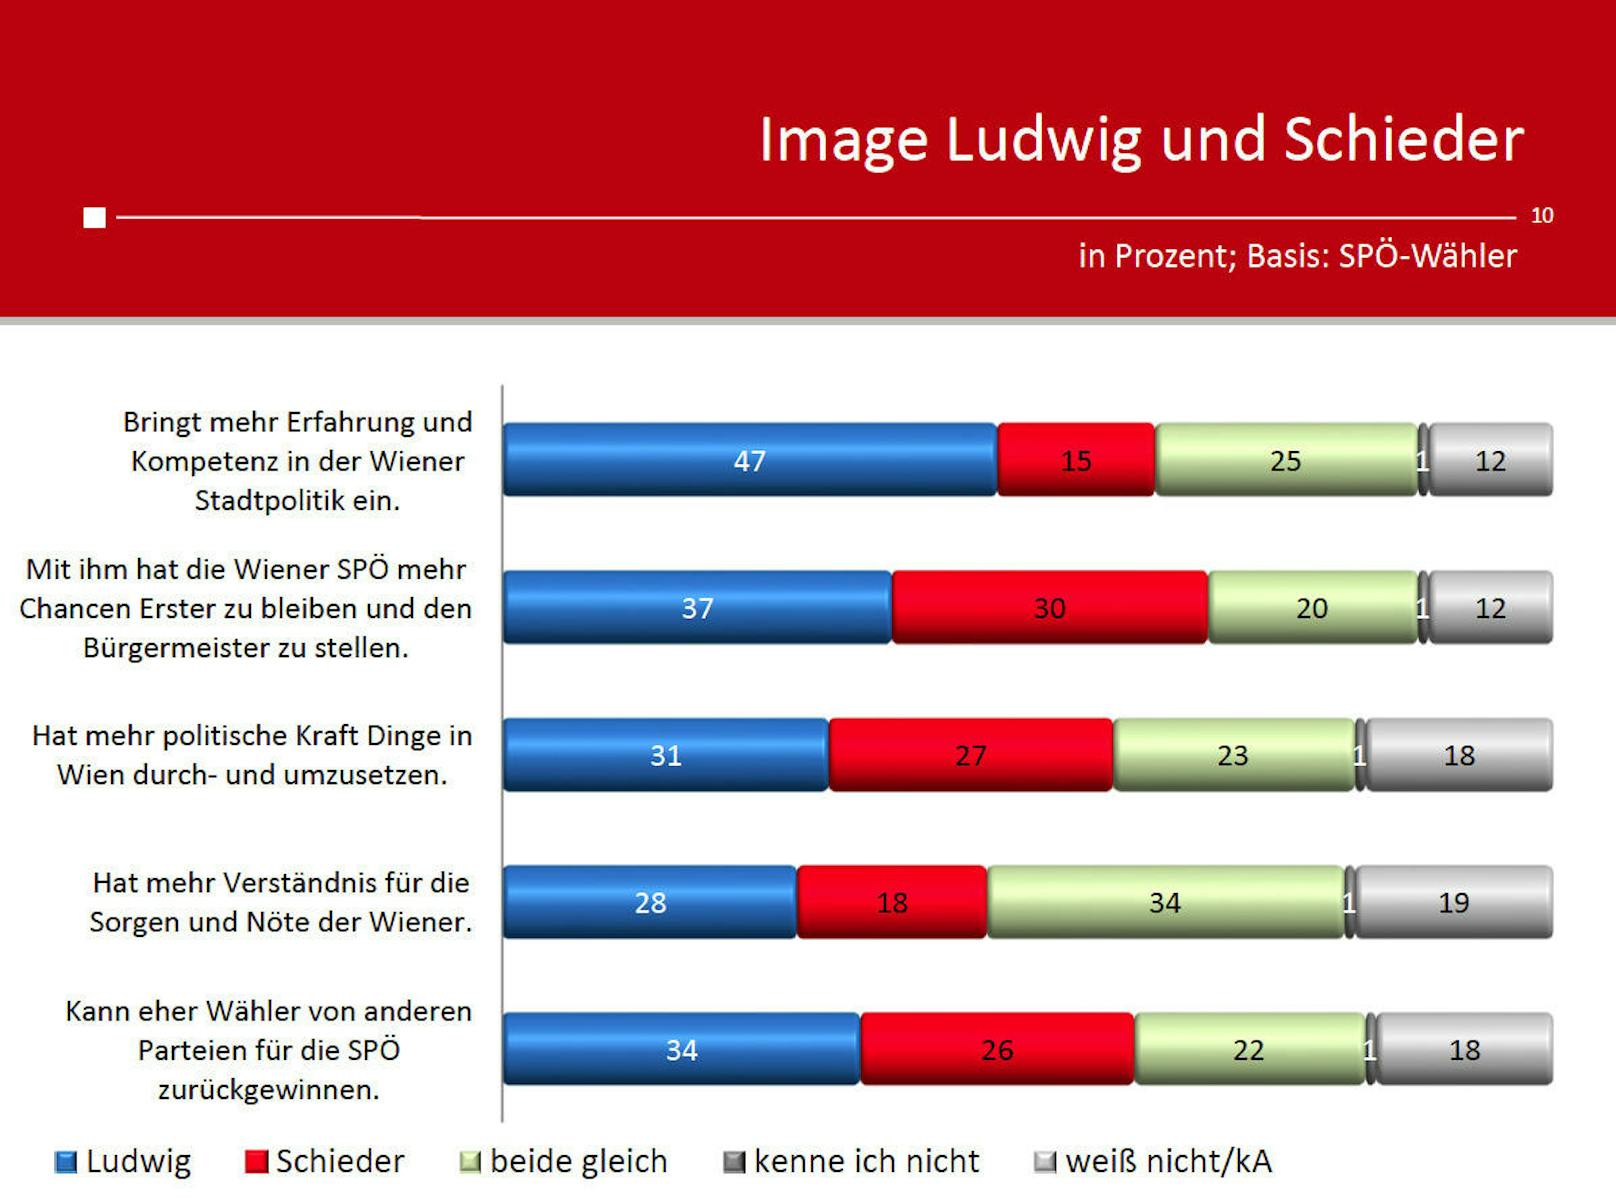 Auch bei den SPÖ-Wählern hat Ludwig bessere Imagewerte als sein Kontrahent Andreas Schieder.